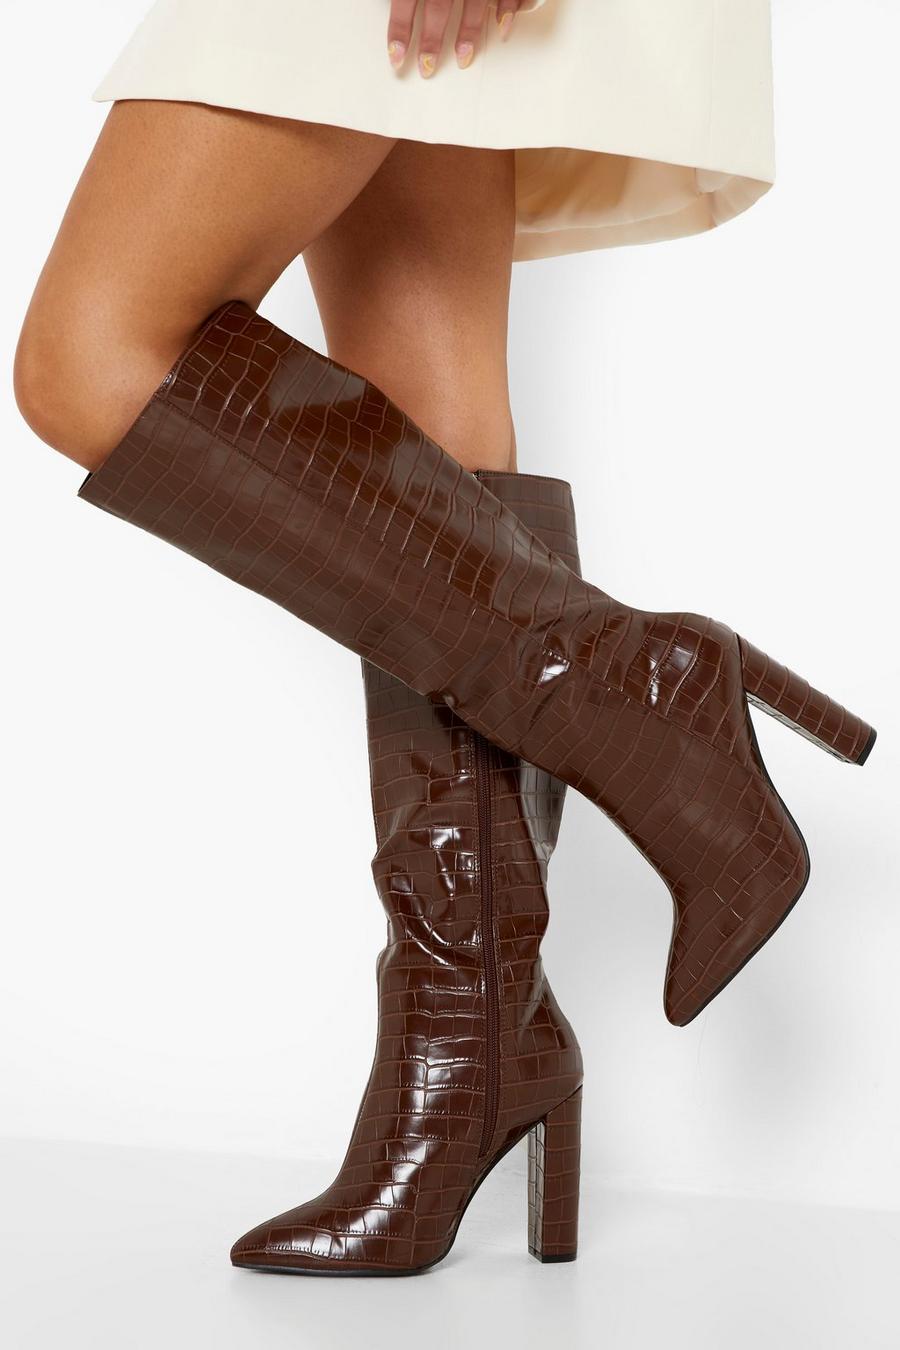 שוקולד brown מגפיים בגובה הברך עם אפקט עור תנין וקצה מחודד, לרגל רחבה